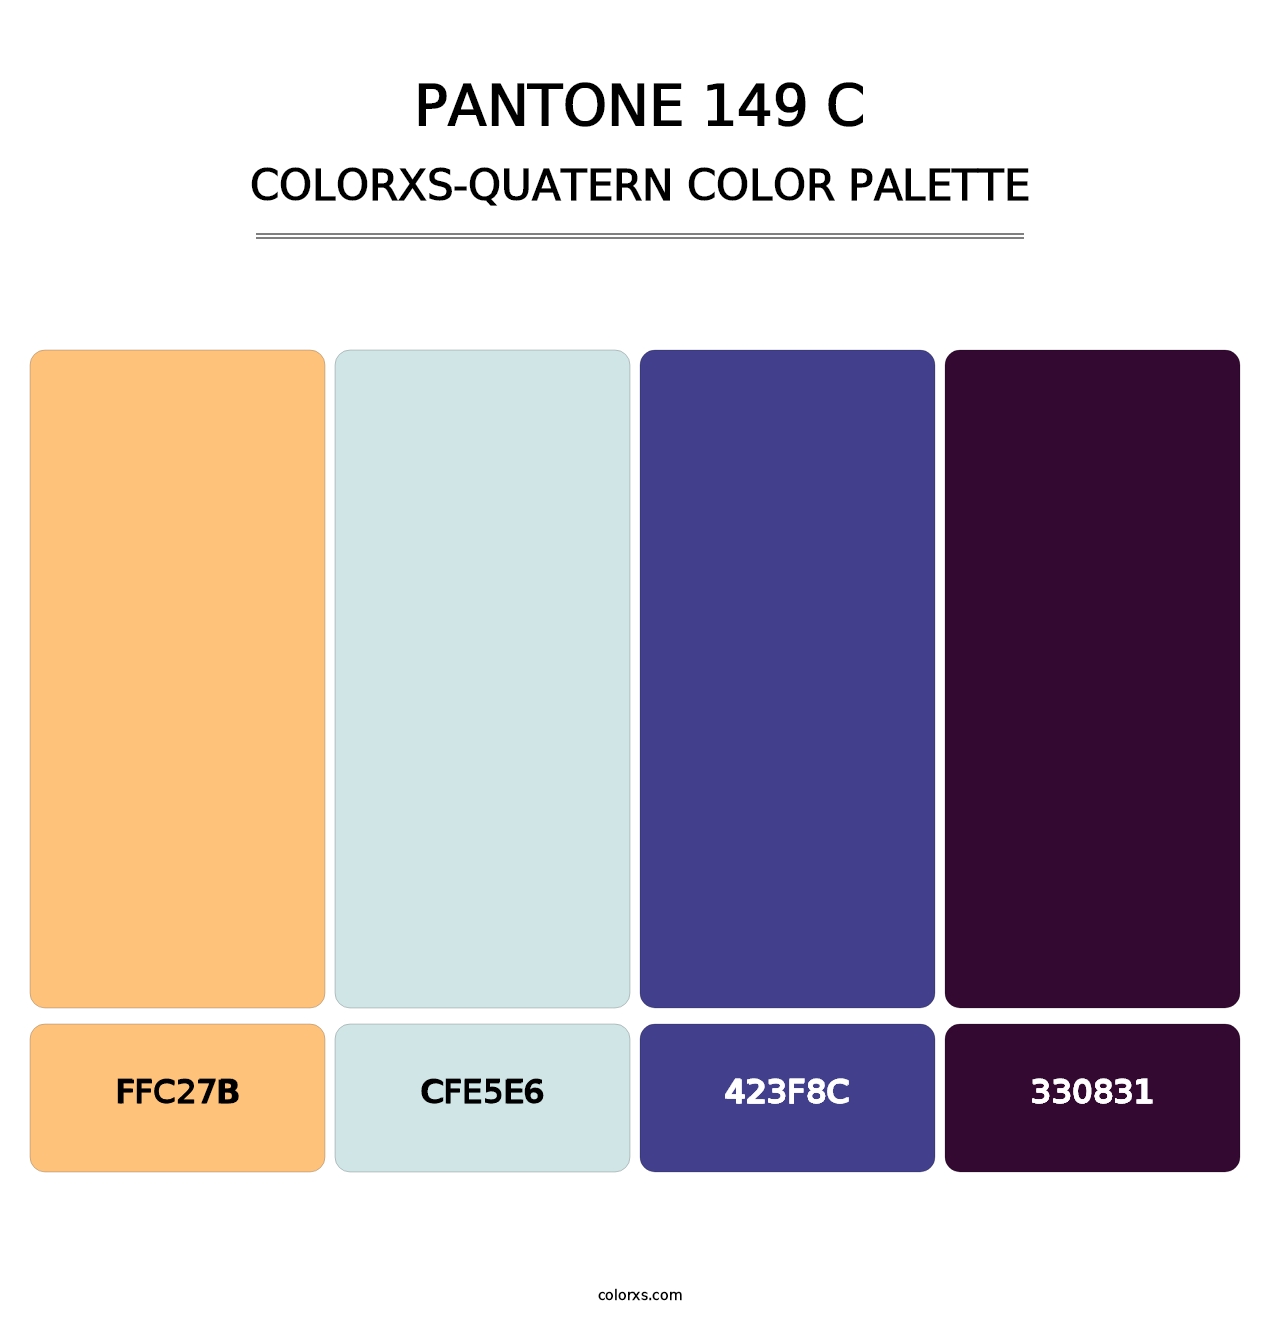 PANTONE 149 C - Colorxs Quatern Palette